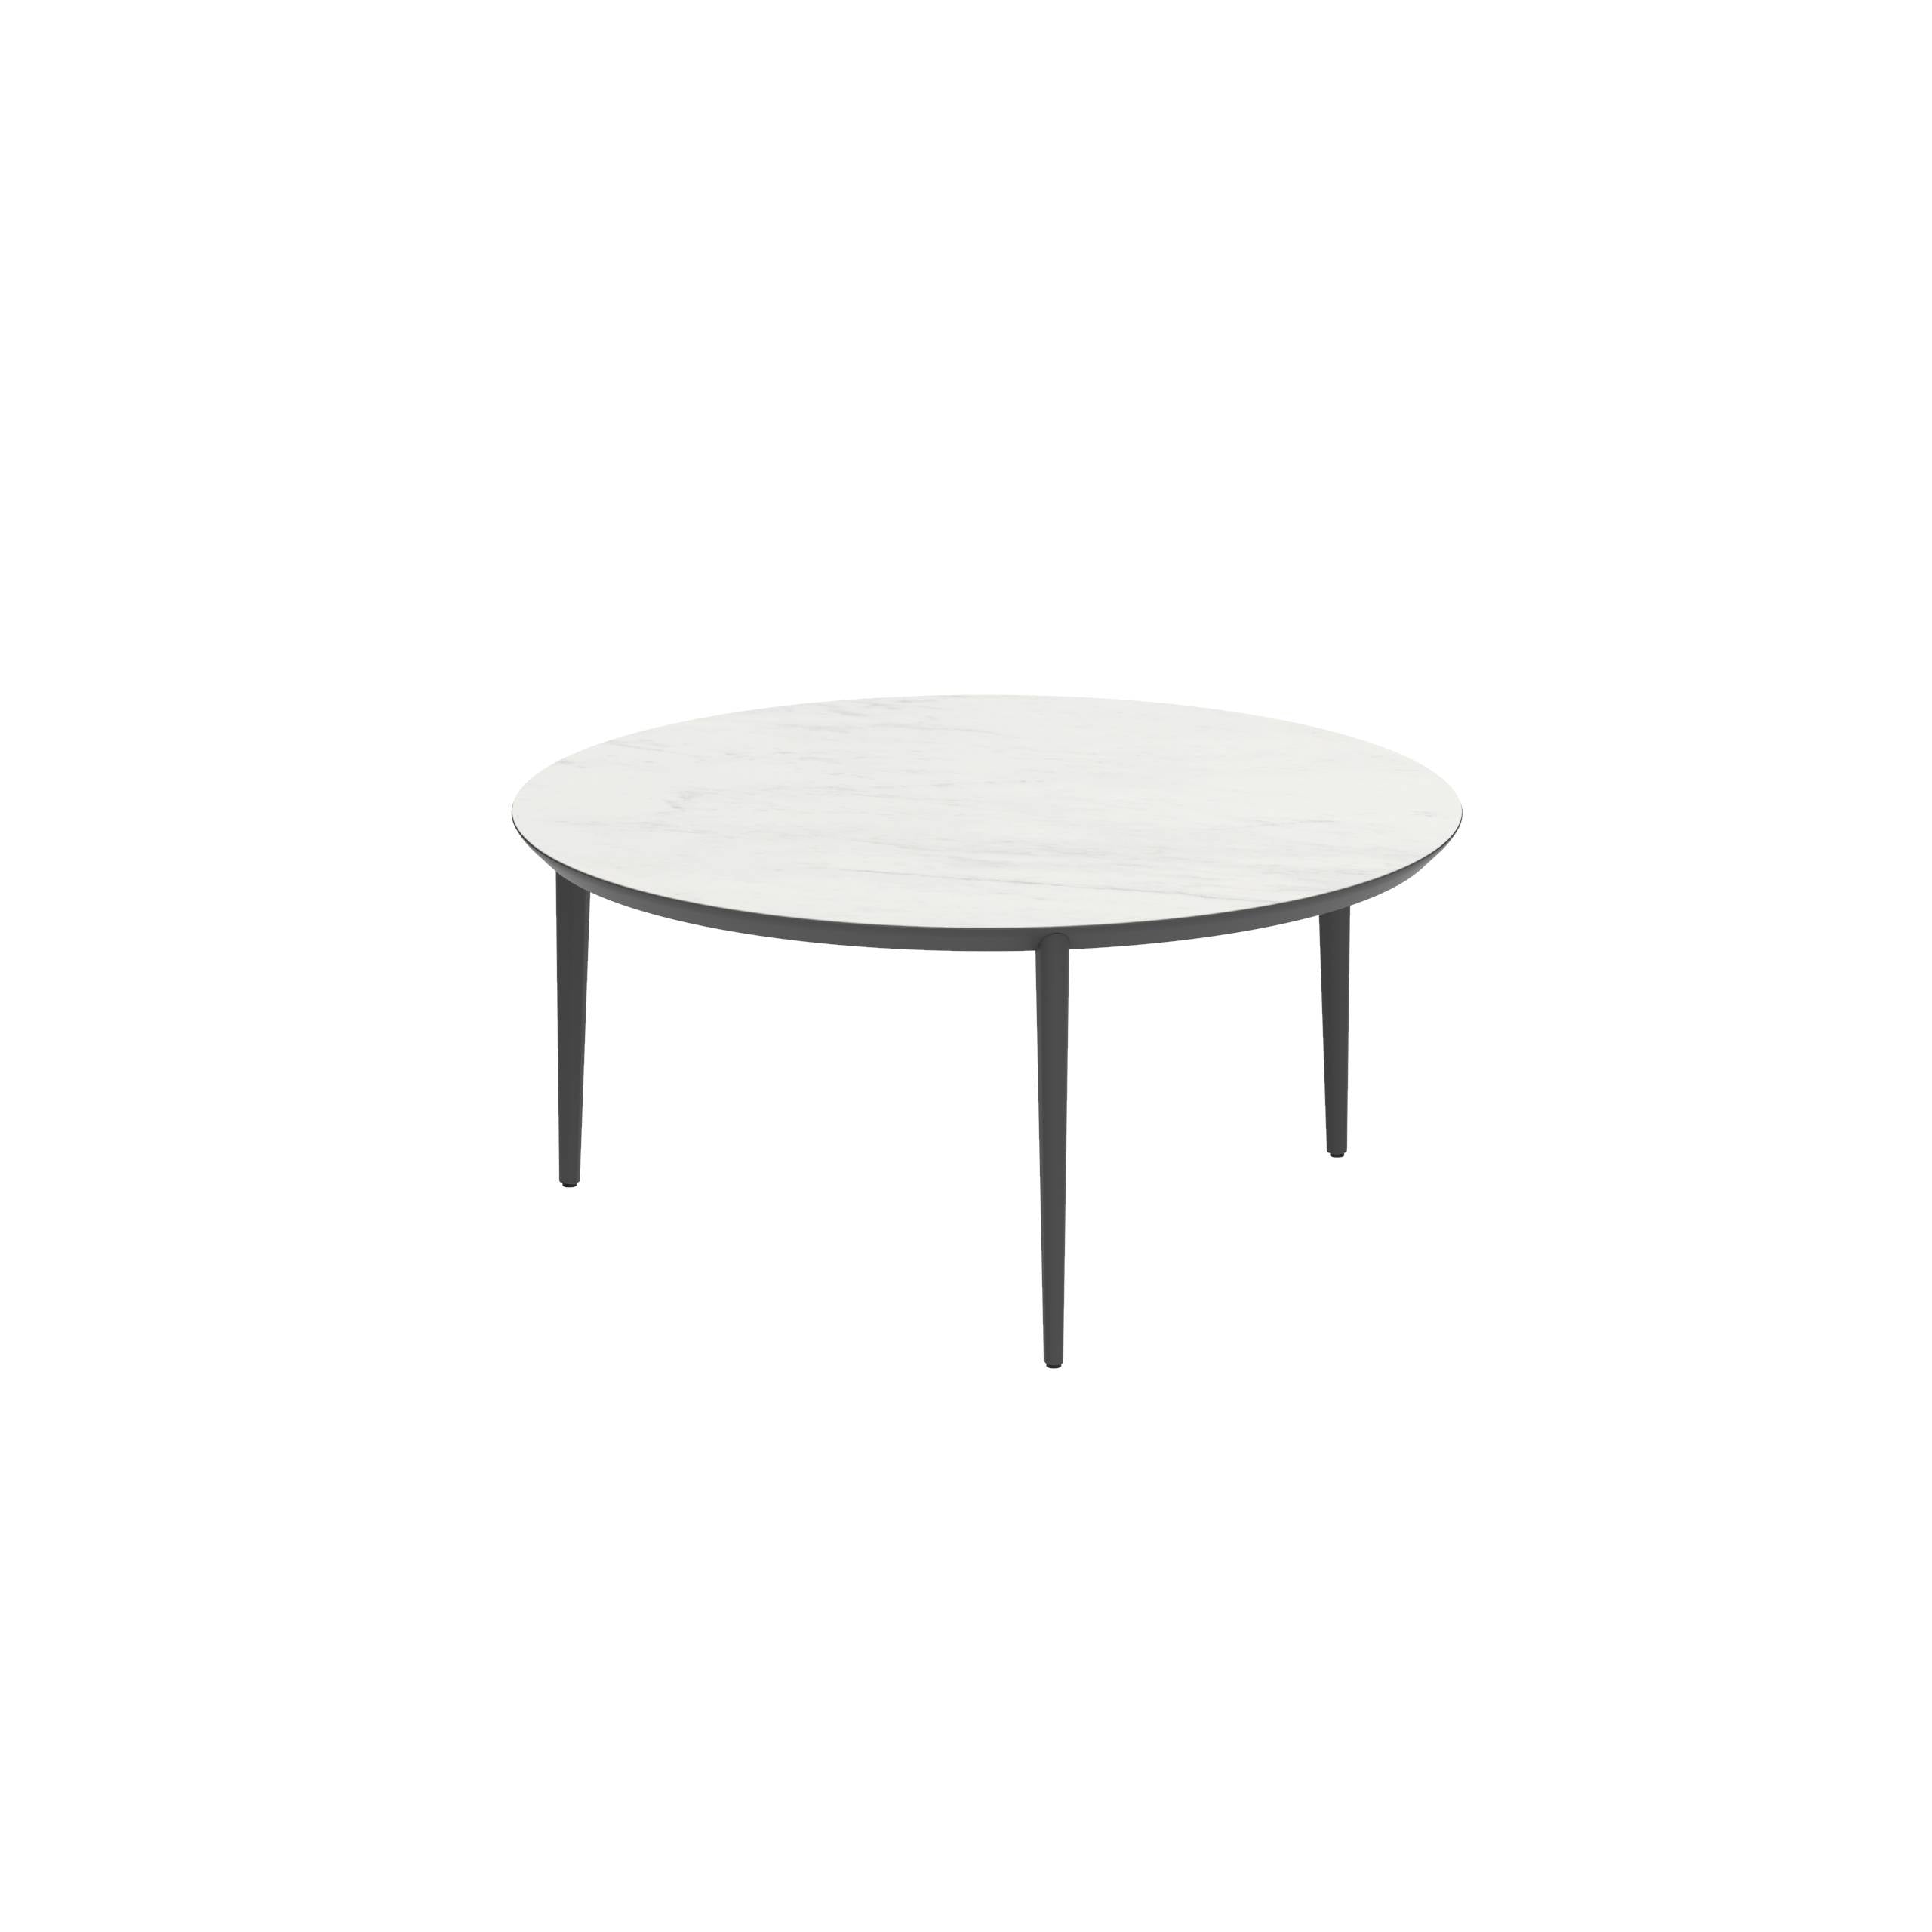 U-Nite Table Round Ø 160cm Alu Legs Anthracite - Table Top Ceramic Bianco Statuario